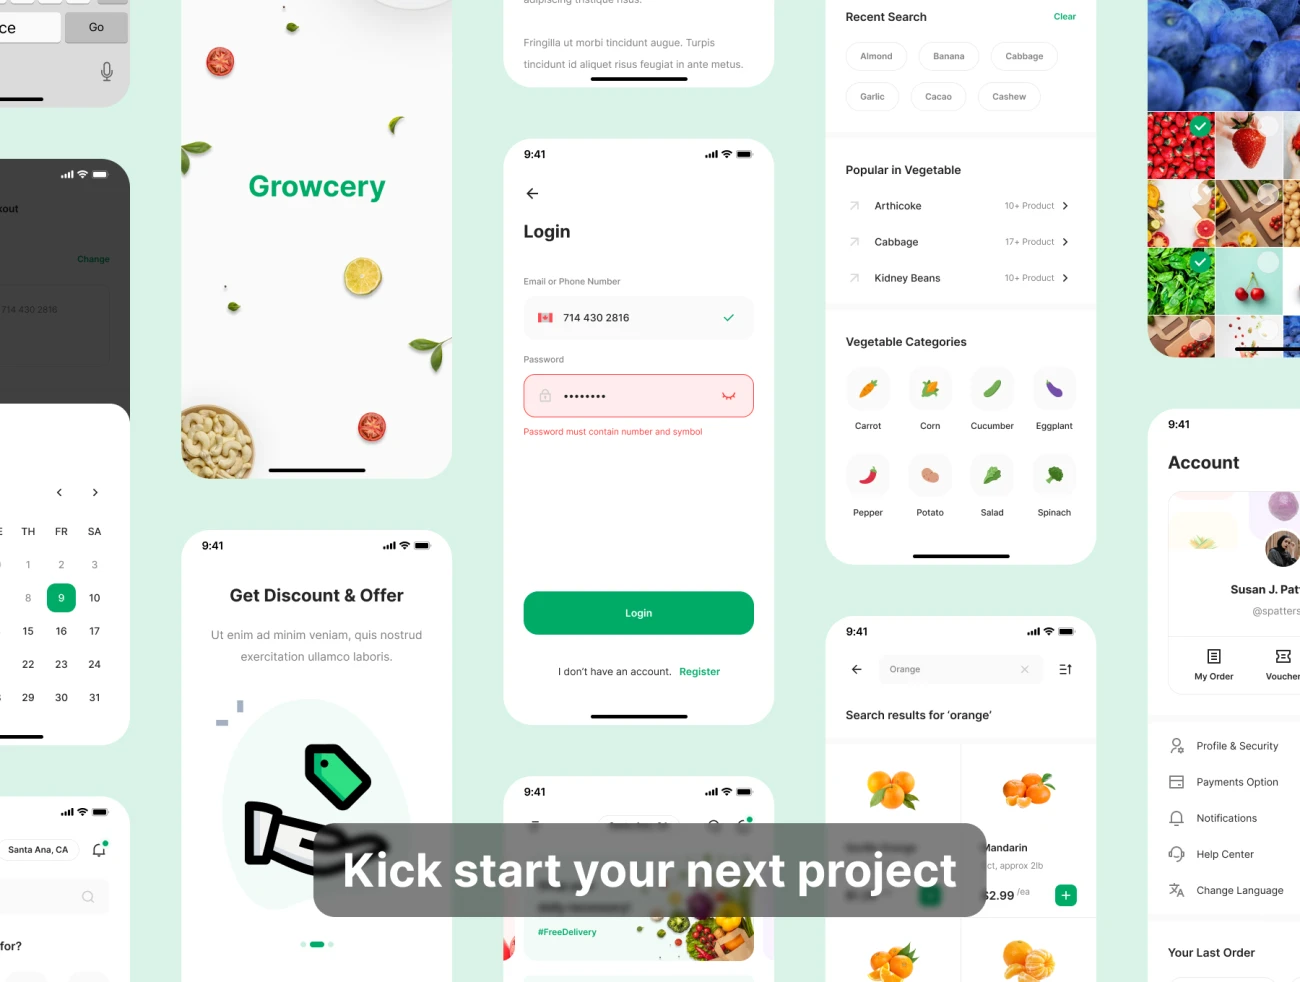 70屏高质量蔬菜水果生鲜日用百货采购应用UI设计套件素材 Growcery – Grocery App UI Kit .figma插图11